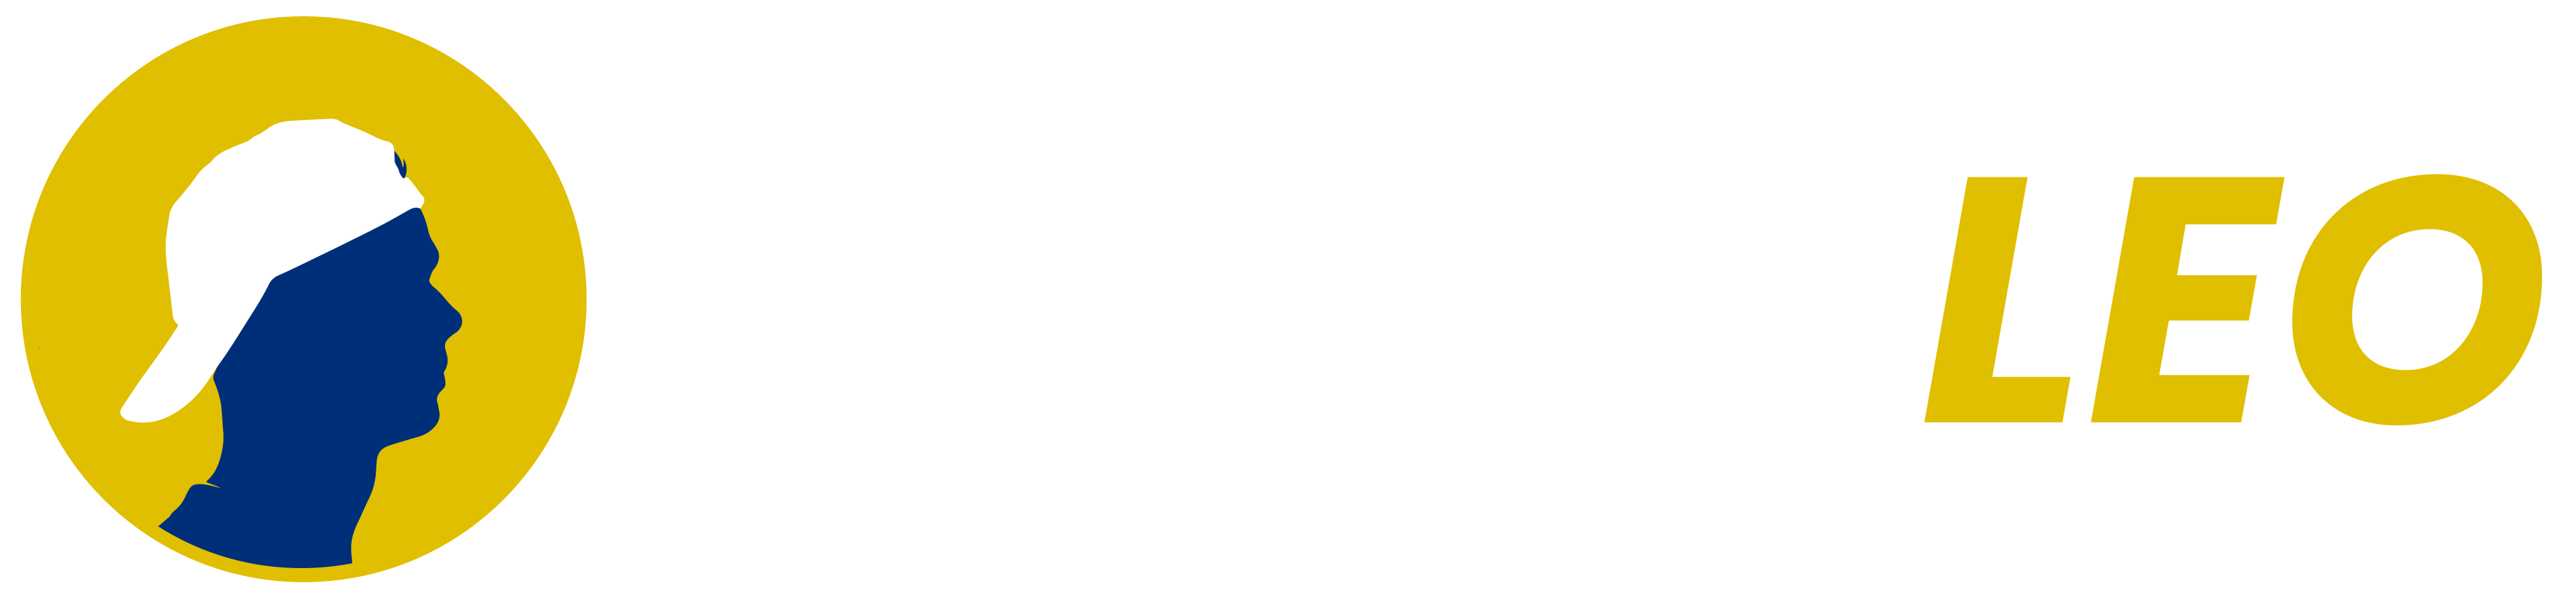 TennisLeo-logo